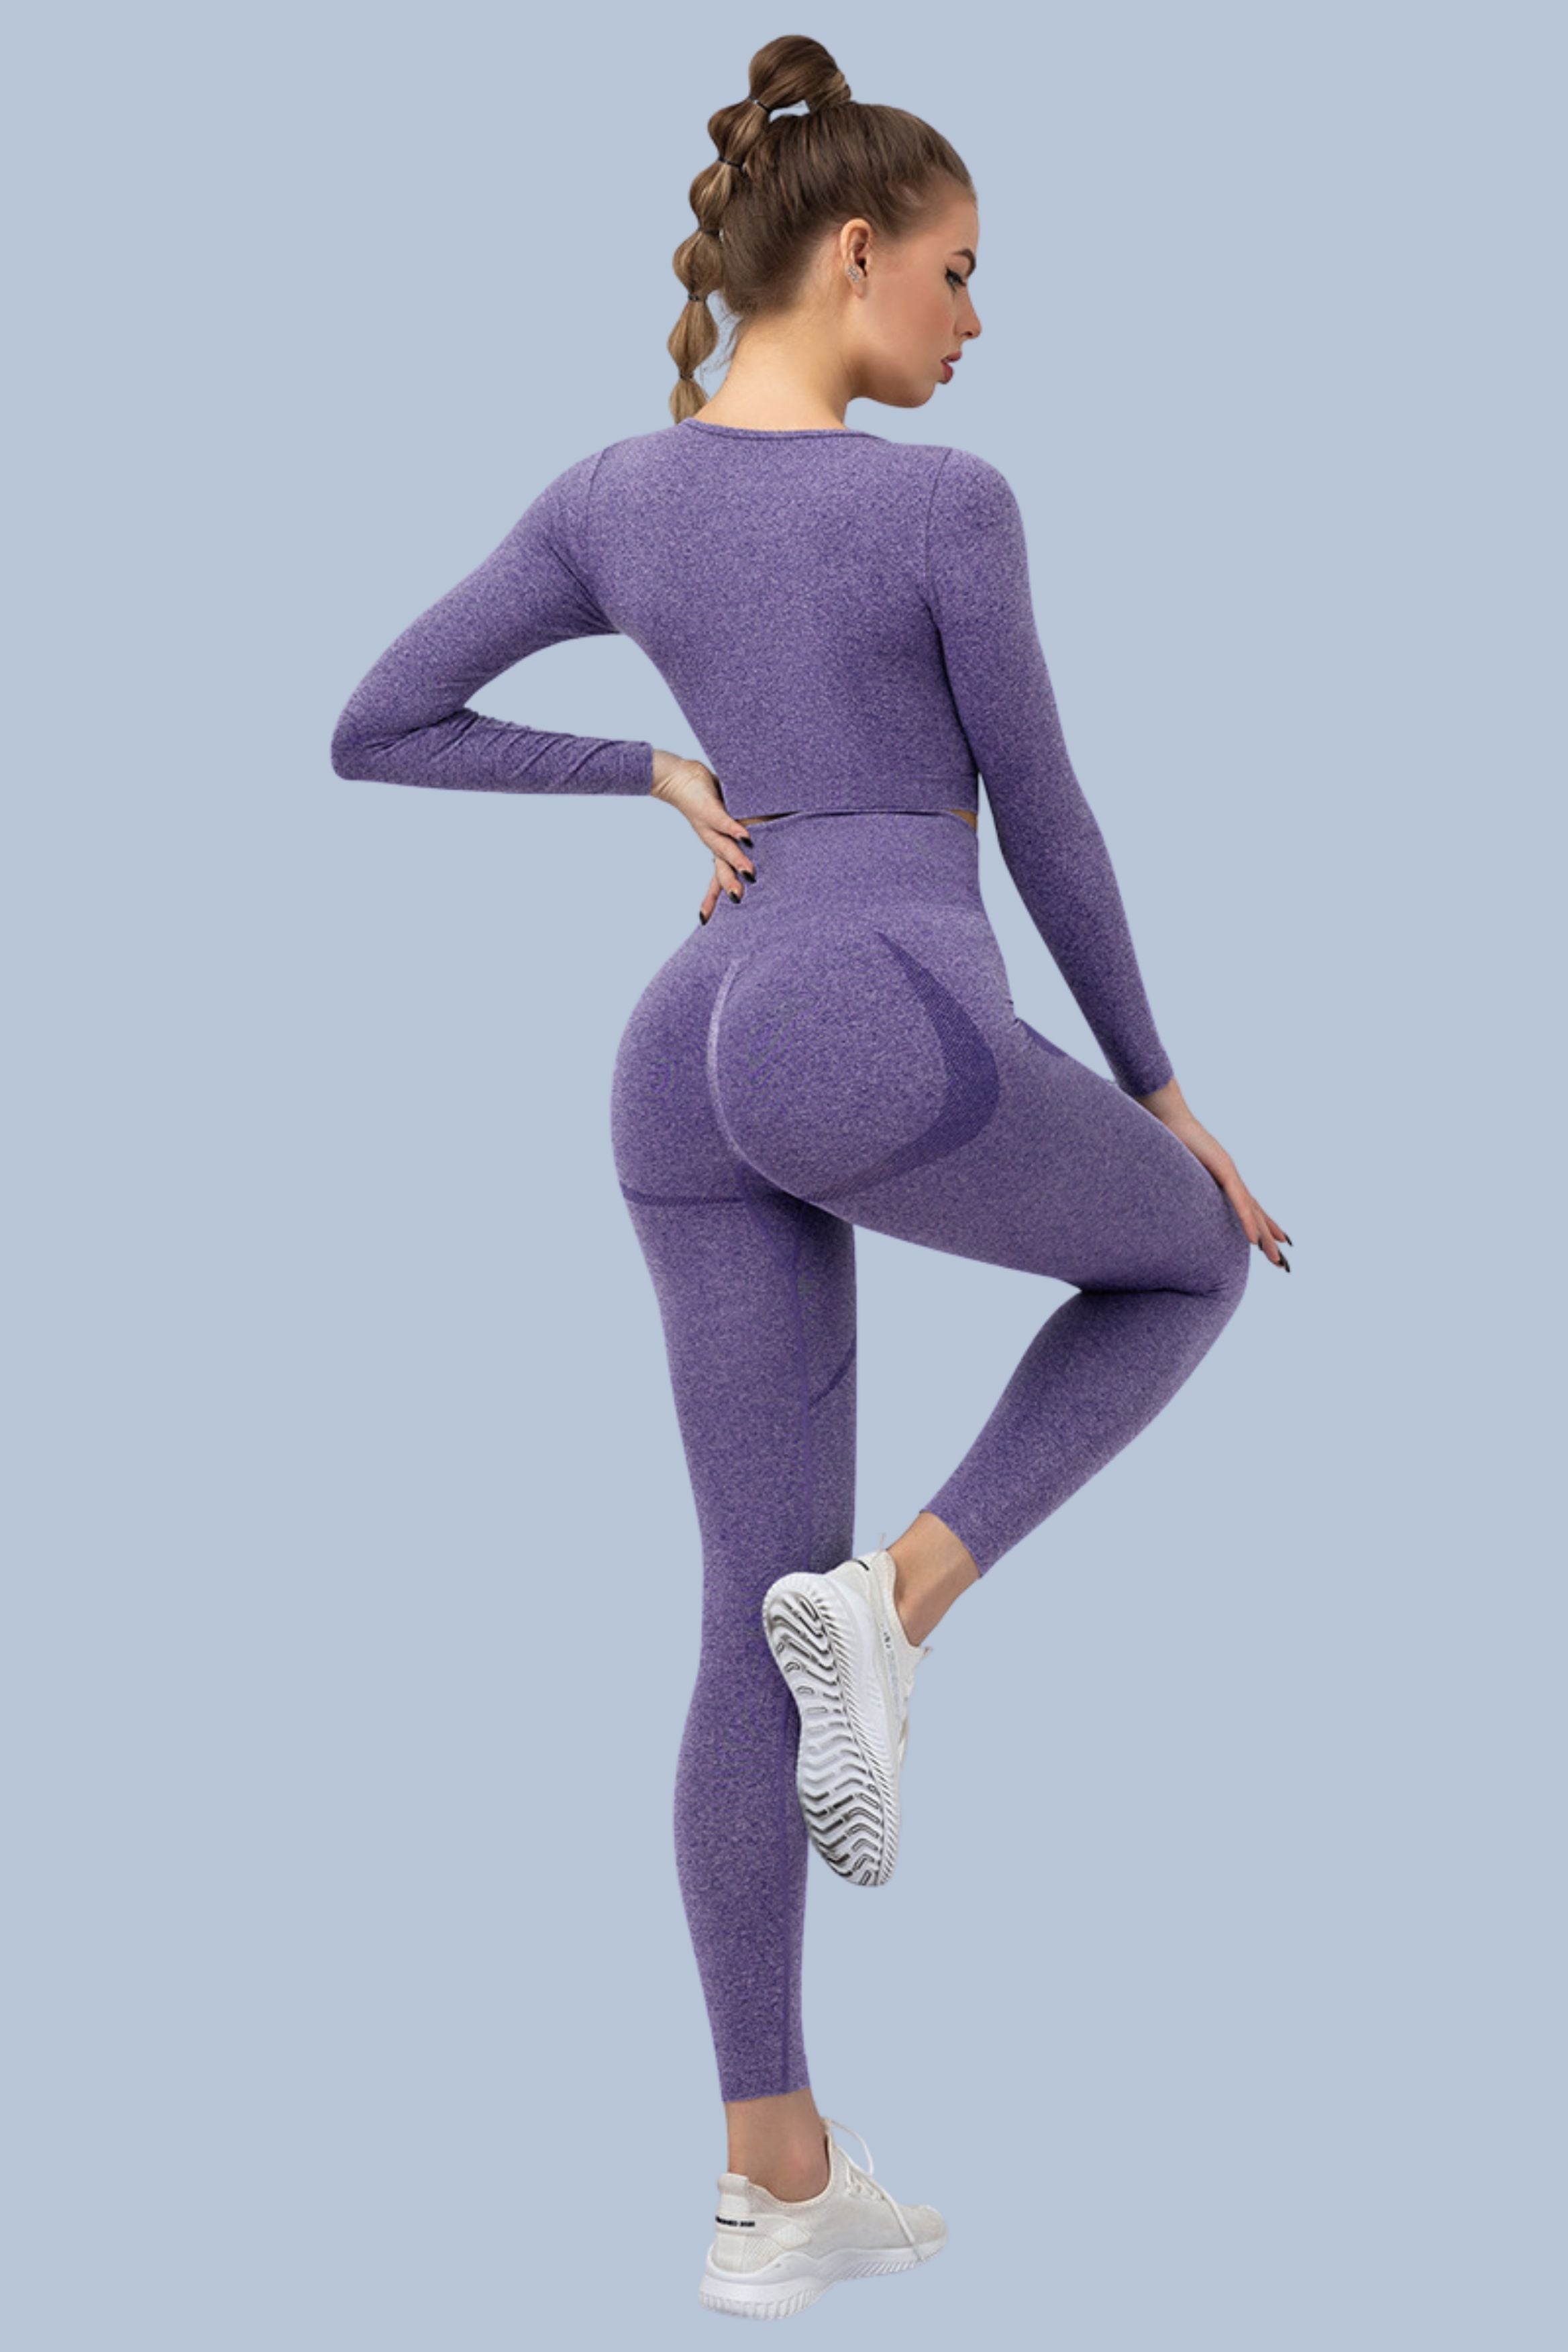 Yoga Clothing Sets Athletic Wear Women Sportswear High Waist